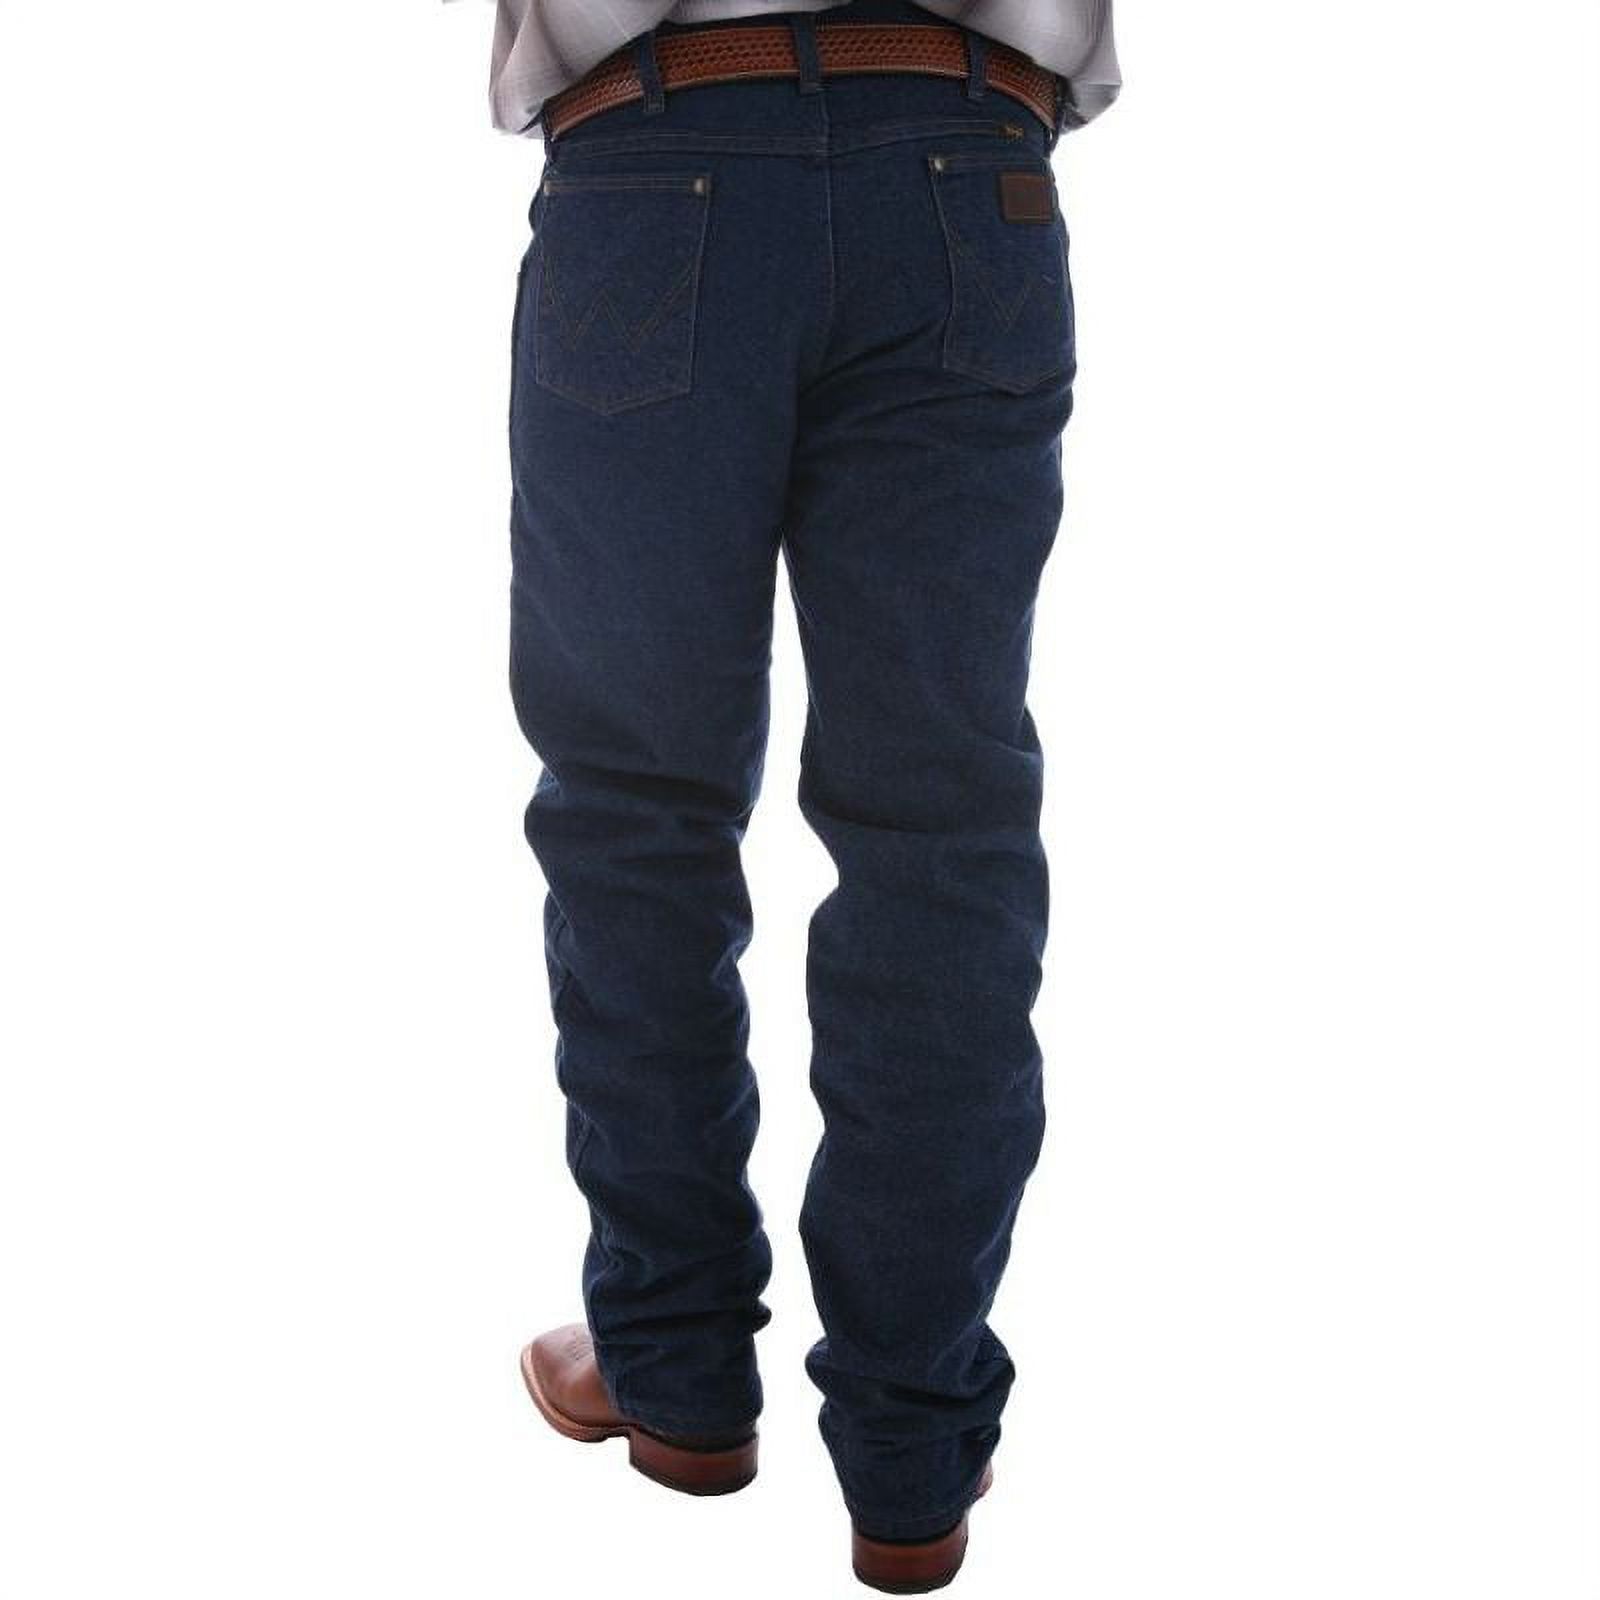 Wrangler Men's Performance Cowboy Cut Jeans Long Blue 38W x 38L  US - image 1 of 4